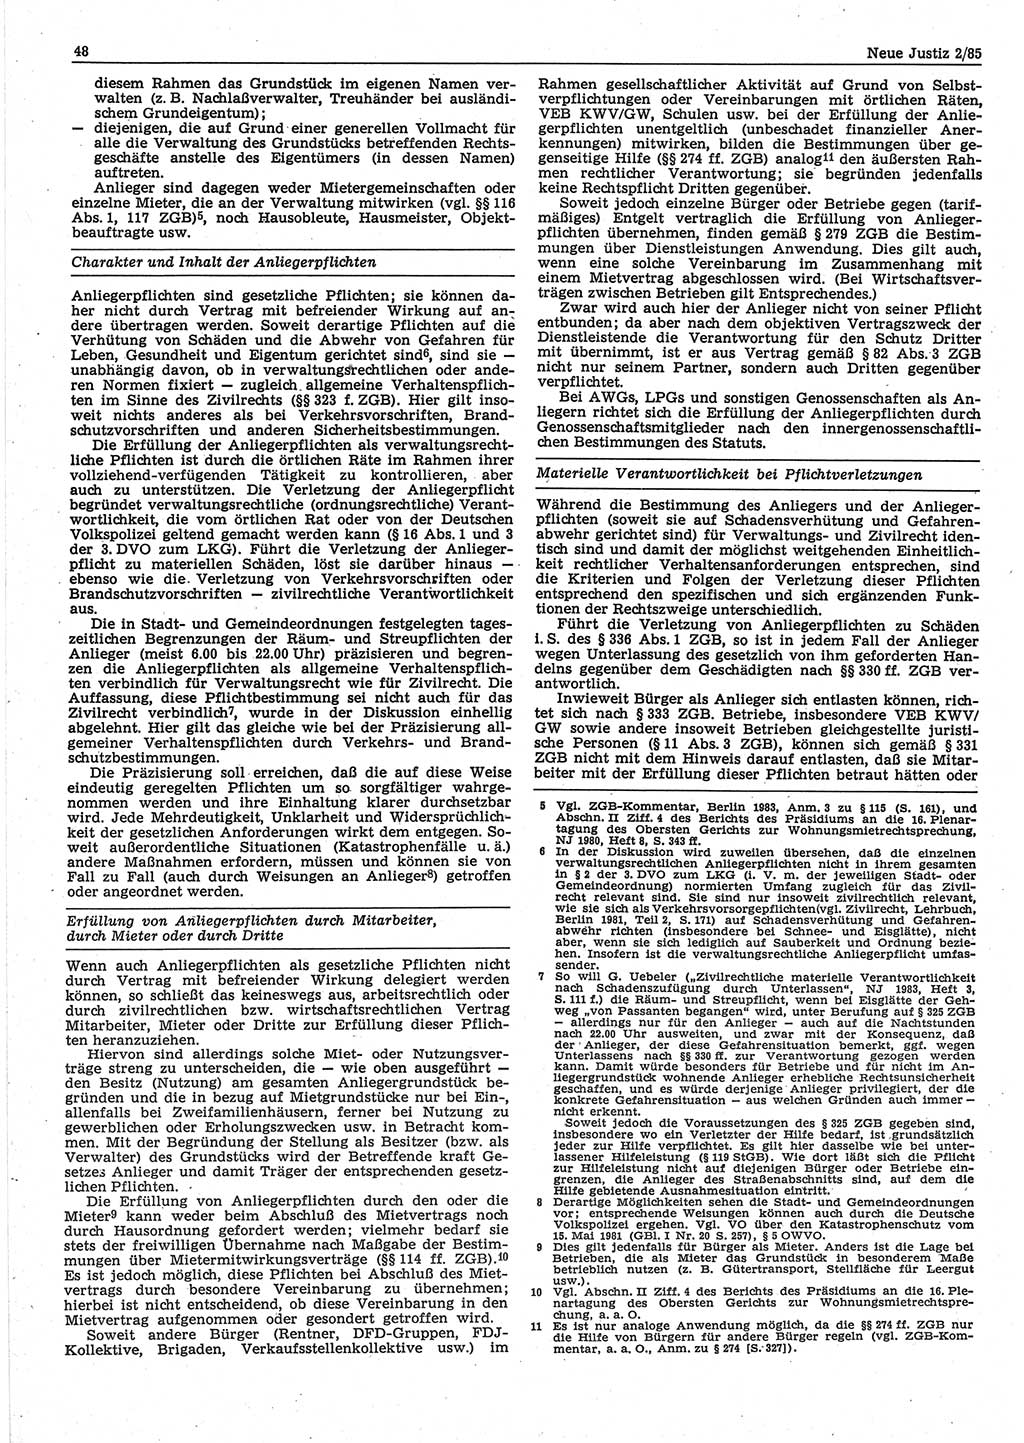 Neue Justiz (NJ), Zeitschrift für sozialistisches Recht und Gesetzlichkeit [Deutsche Demokratische Republik (DDR)], 39. Jahrgang 1985, Seite 48 (NJ DDR 1985, S. 48)